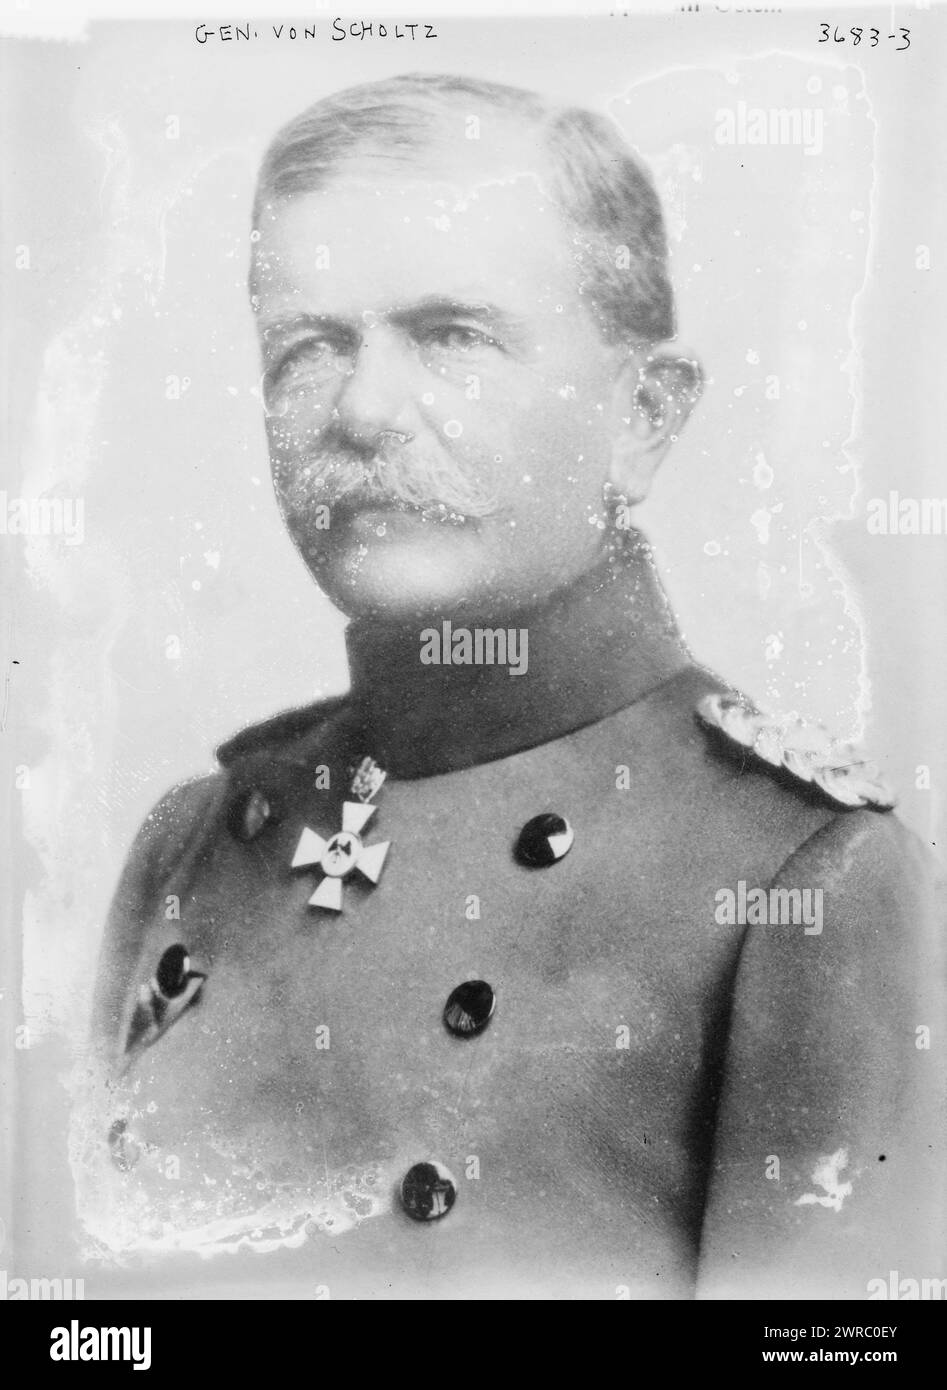 Gen. von Scholtz, 12/13/15, Photograph shows portrait of German general Friedrich von Scholtz (1851-1927)., 12/13/15, Glass negatives, 1 negative: glass Stock Photo